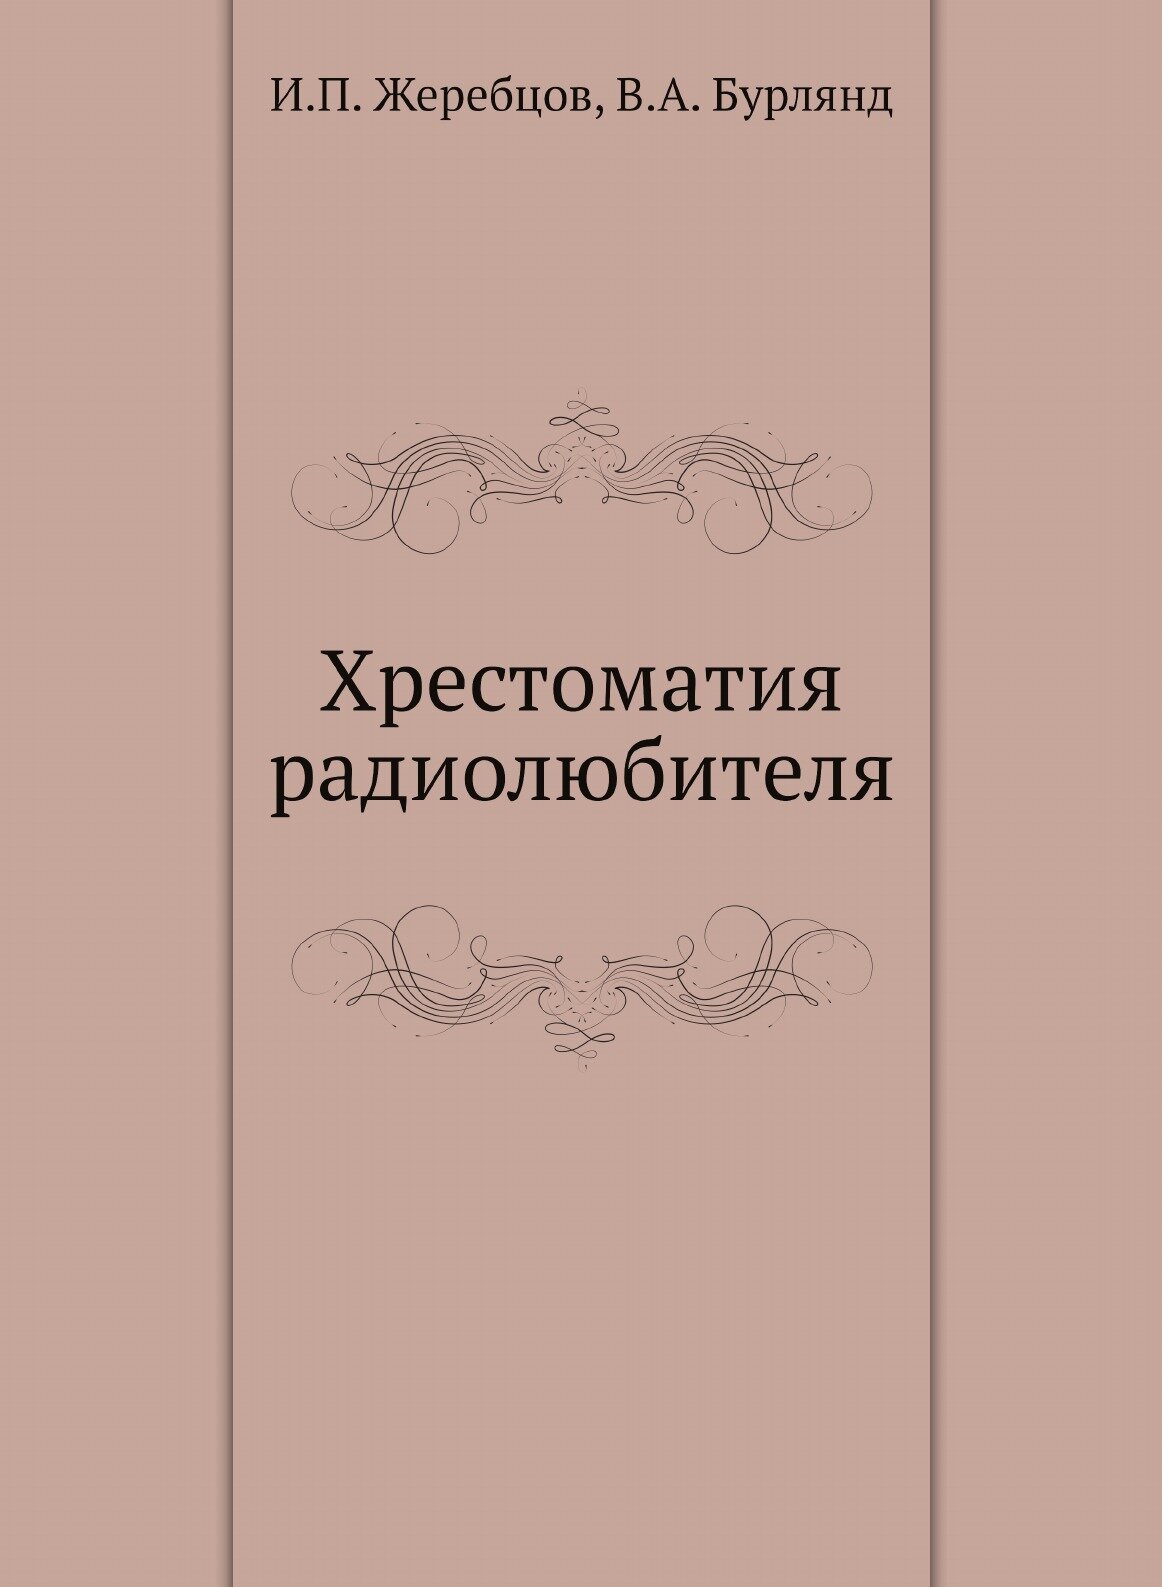 Хрестоматия радиолюбителя (5-е изд.) - фото №1